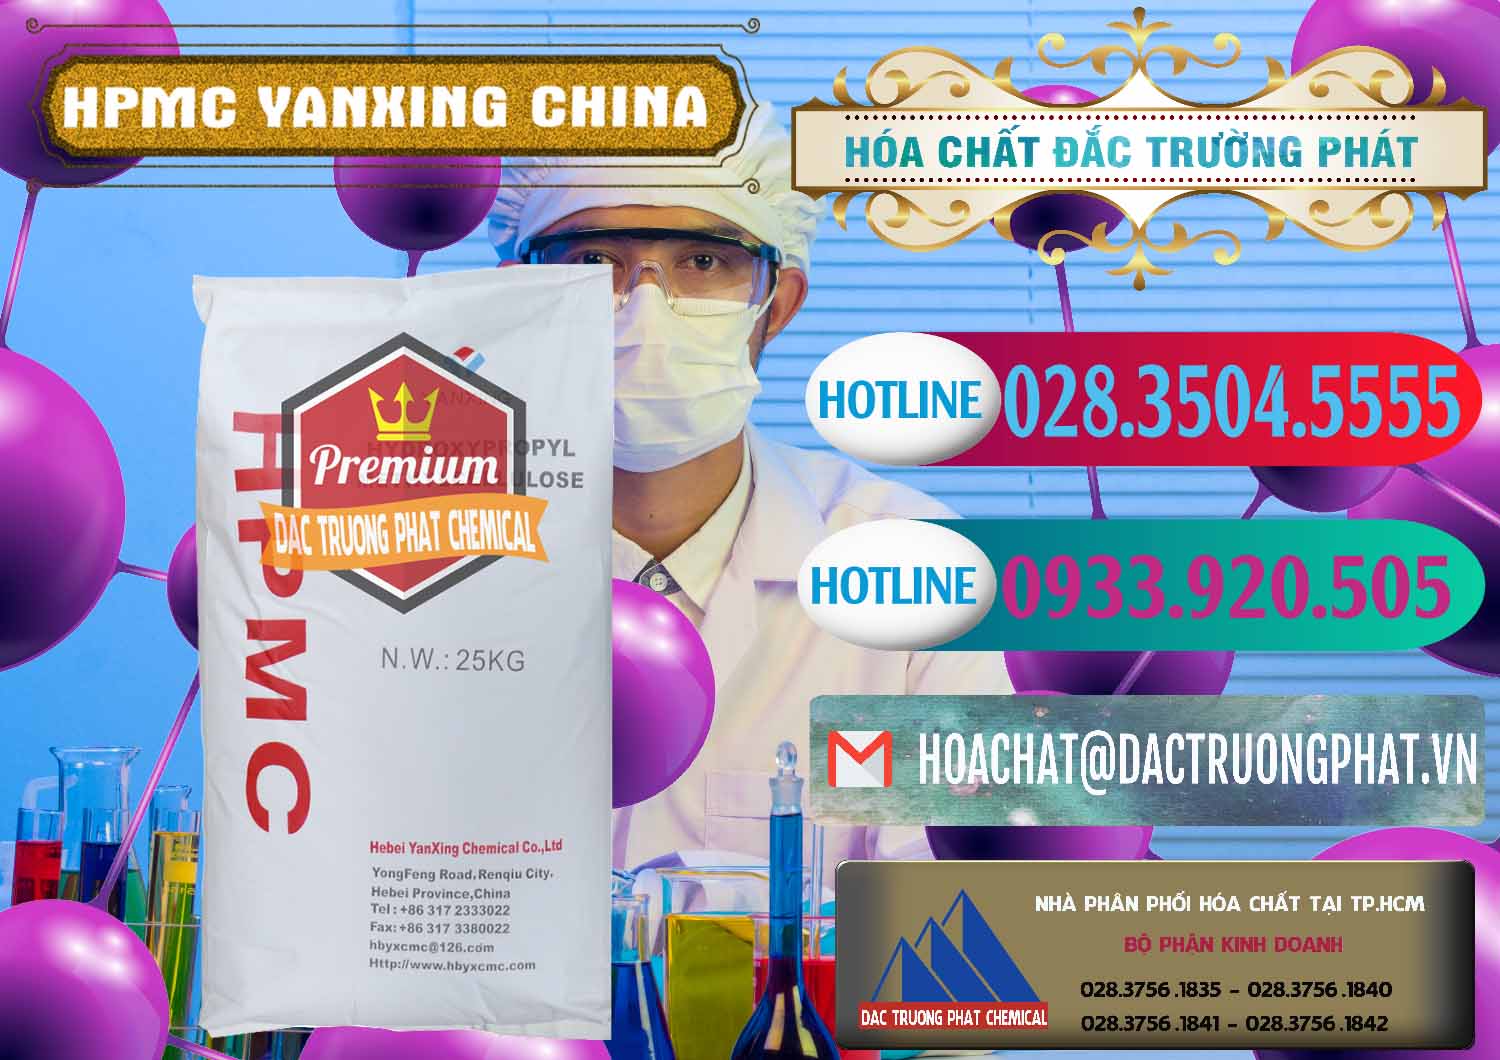 Cung cấp - bán Chất Tạo Đặc HPMC - Hydroxypropyl Methyl Cellulose Yanxing Trung Quốc China - 0483 - Nhà cung cấp và phân phối hóa chất tại TP.HCM - truongphat.vn